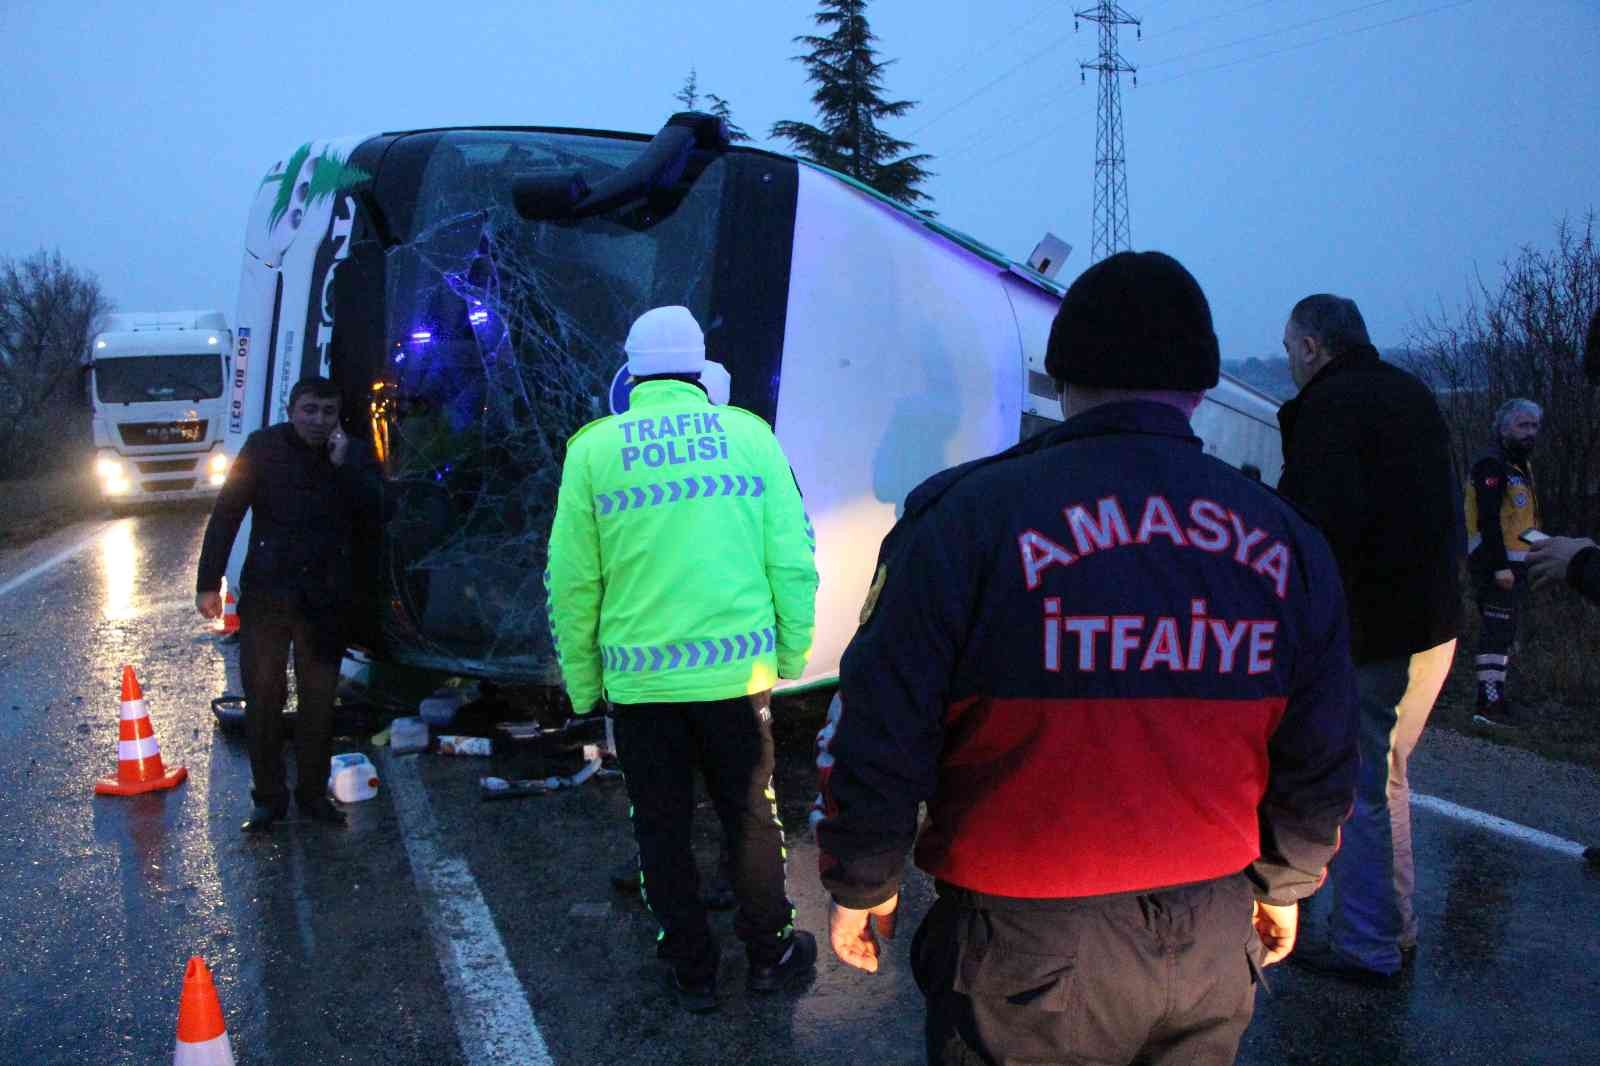 Amasya’da yolcu otobüsü devrildi: 1 ölü, 19 yaralı #amasya